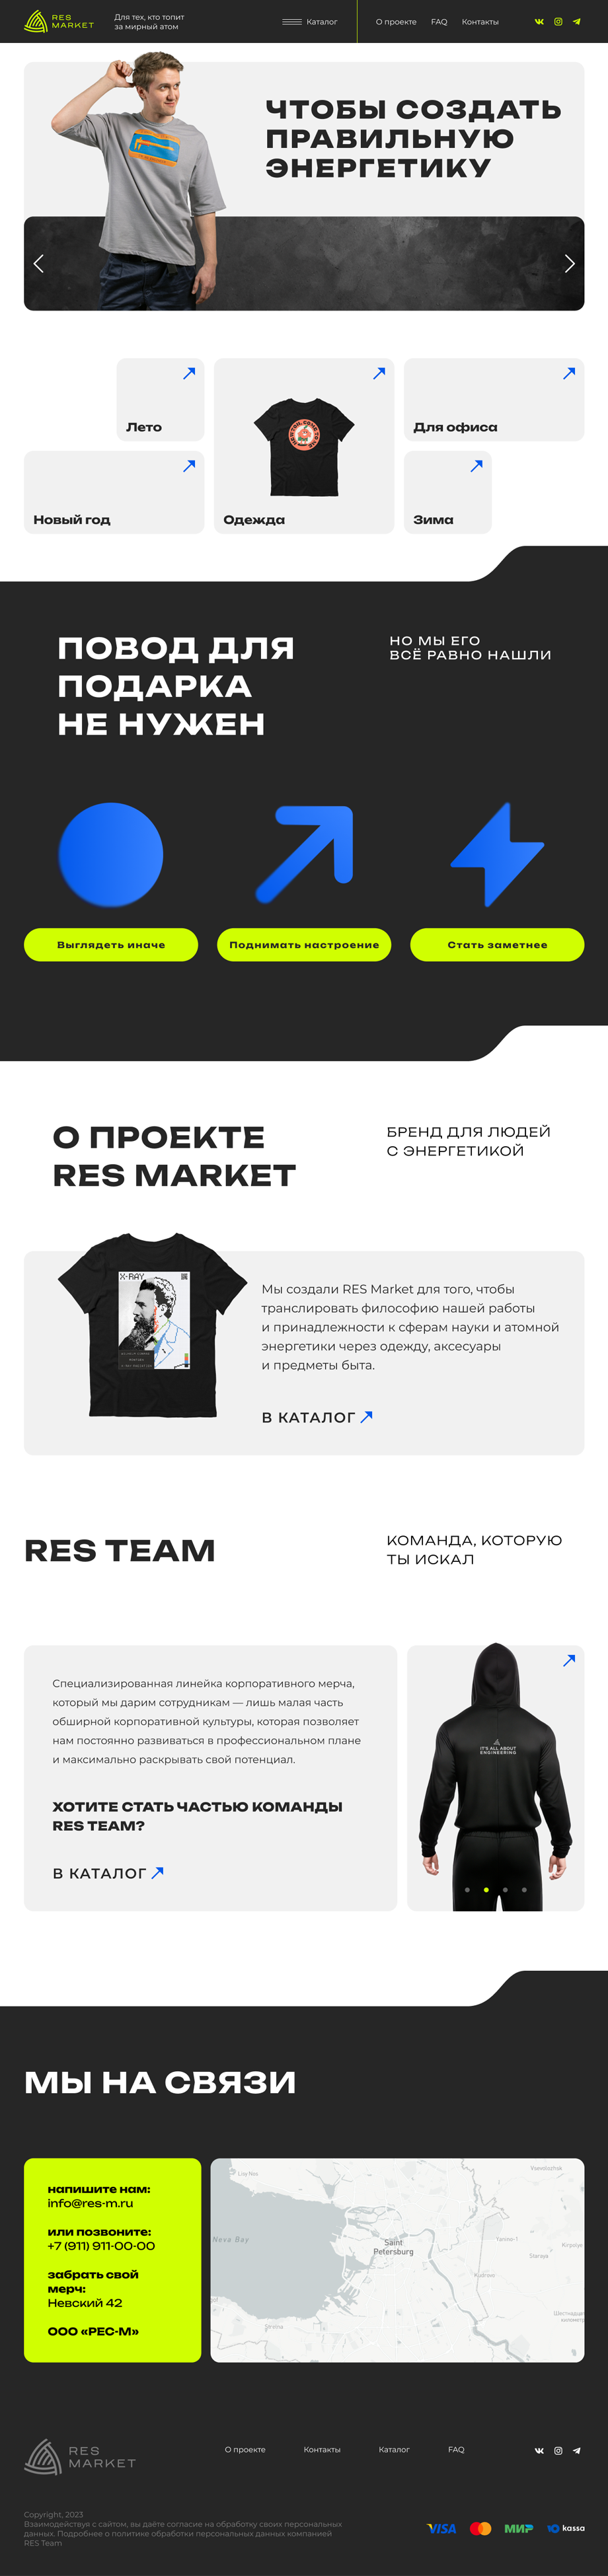 Дизайн главной страницы интернет-магазина мерча RES MARKET